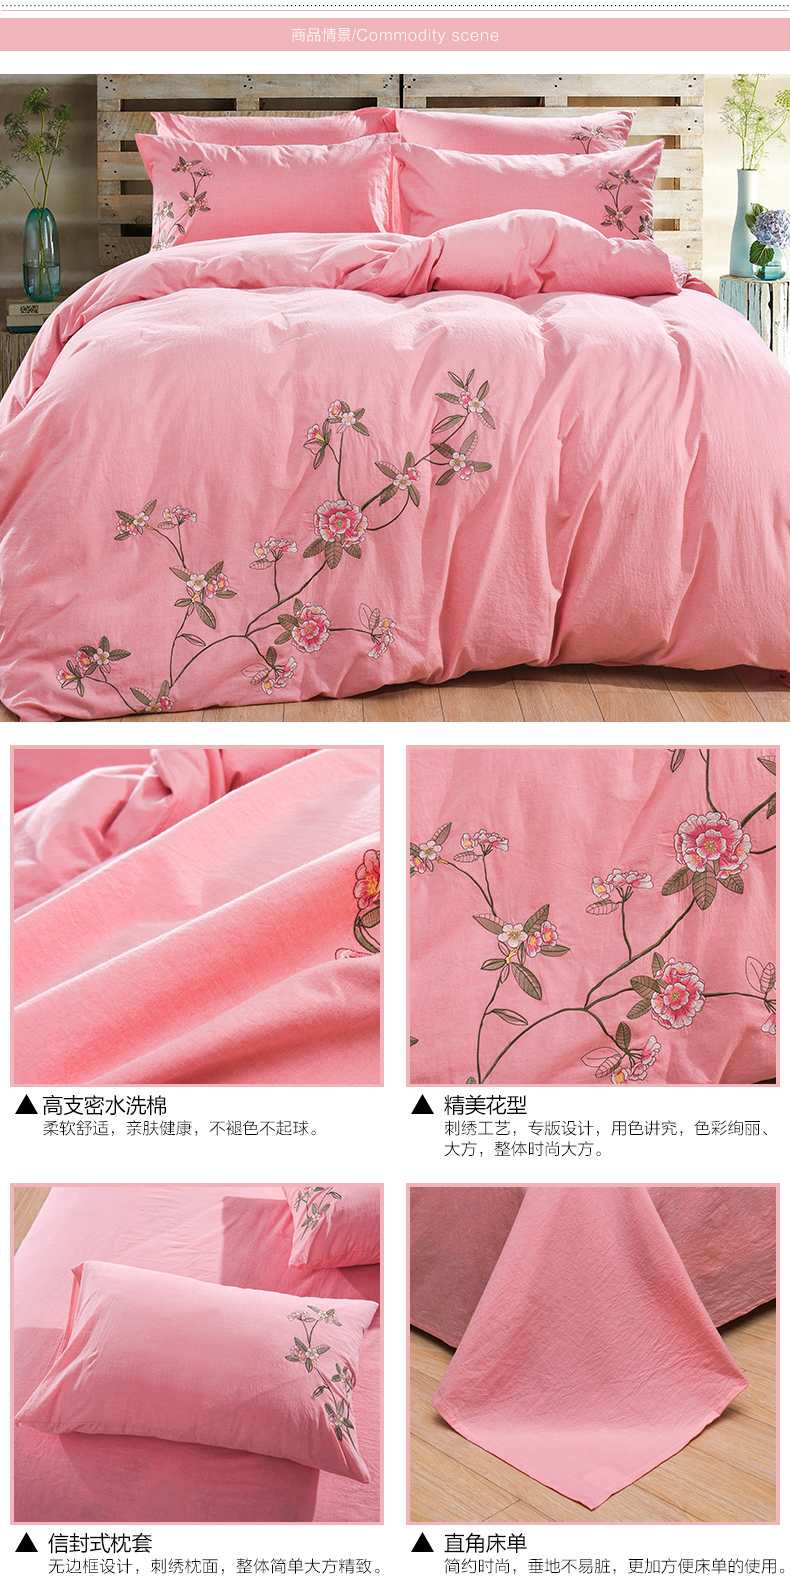 Trung quốc Fengshan Mực Tranh Thêu Rửa Cotton Bốn mảnh Cotton Thêu Bộ Đồ Giường Mới Của Trung Quốc Cổ Điển Bộ Đồ Giường